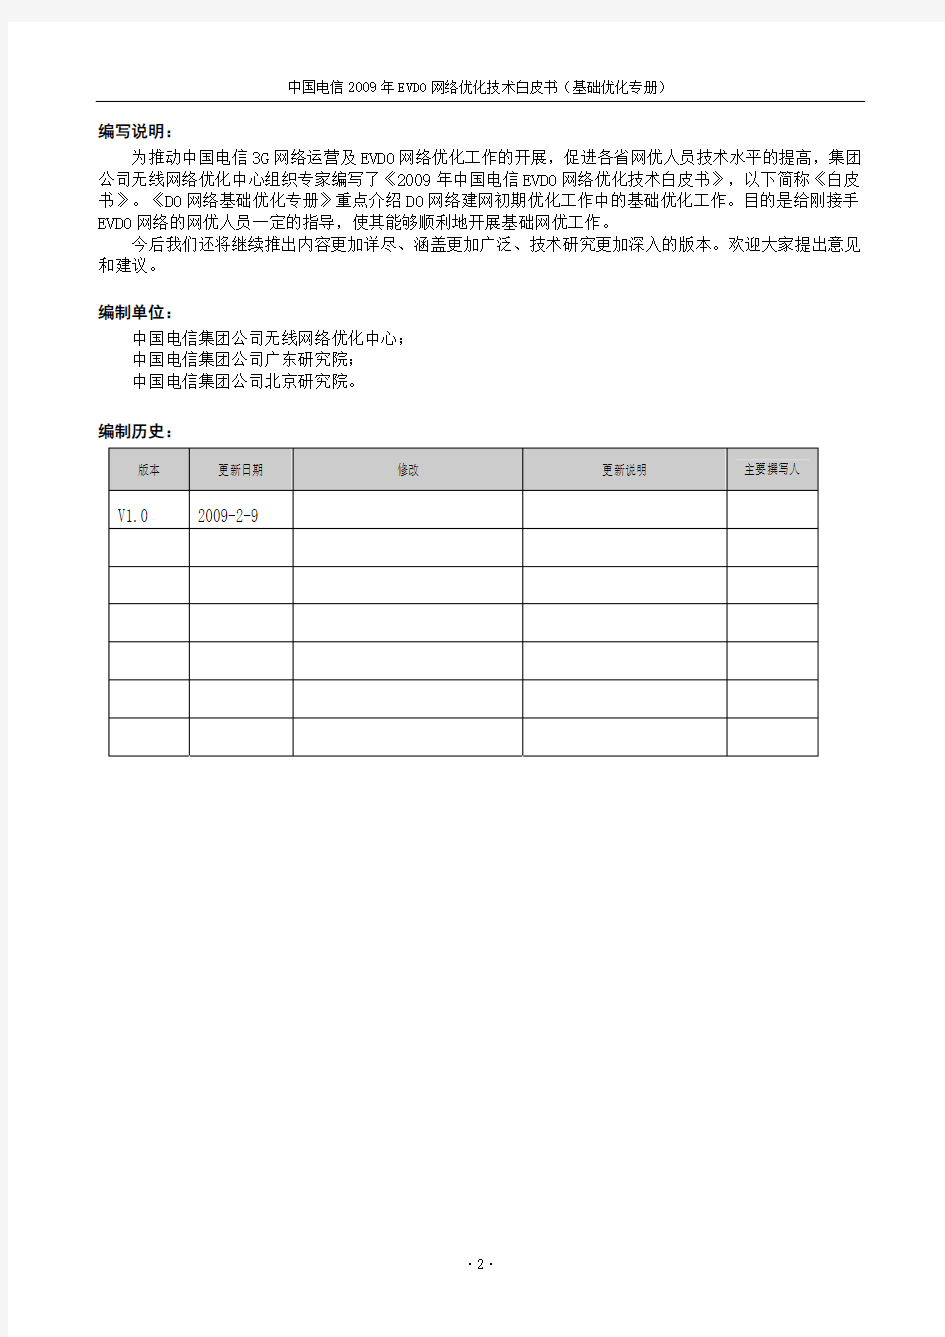 中国电信-2009 年EVDO网络优化技术白皮书-(基础优化专册)(V1.0 版)